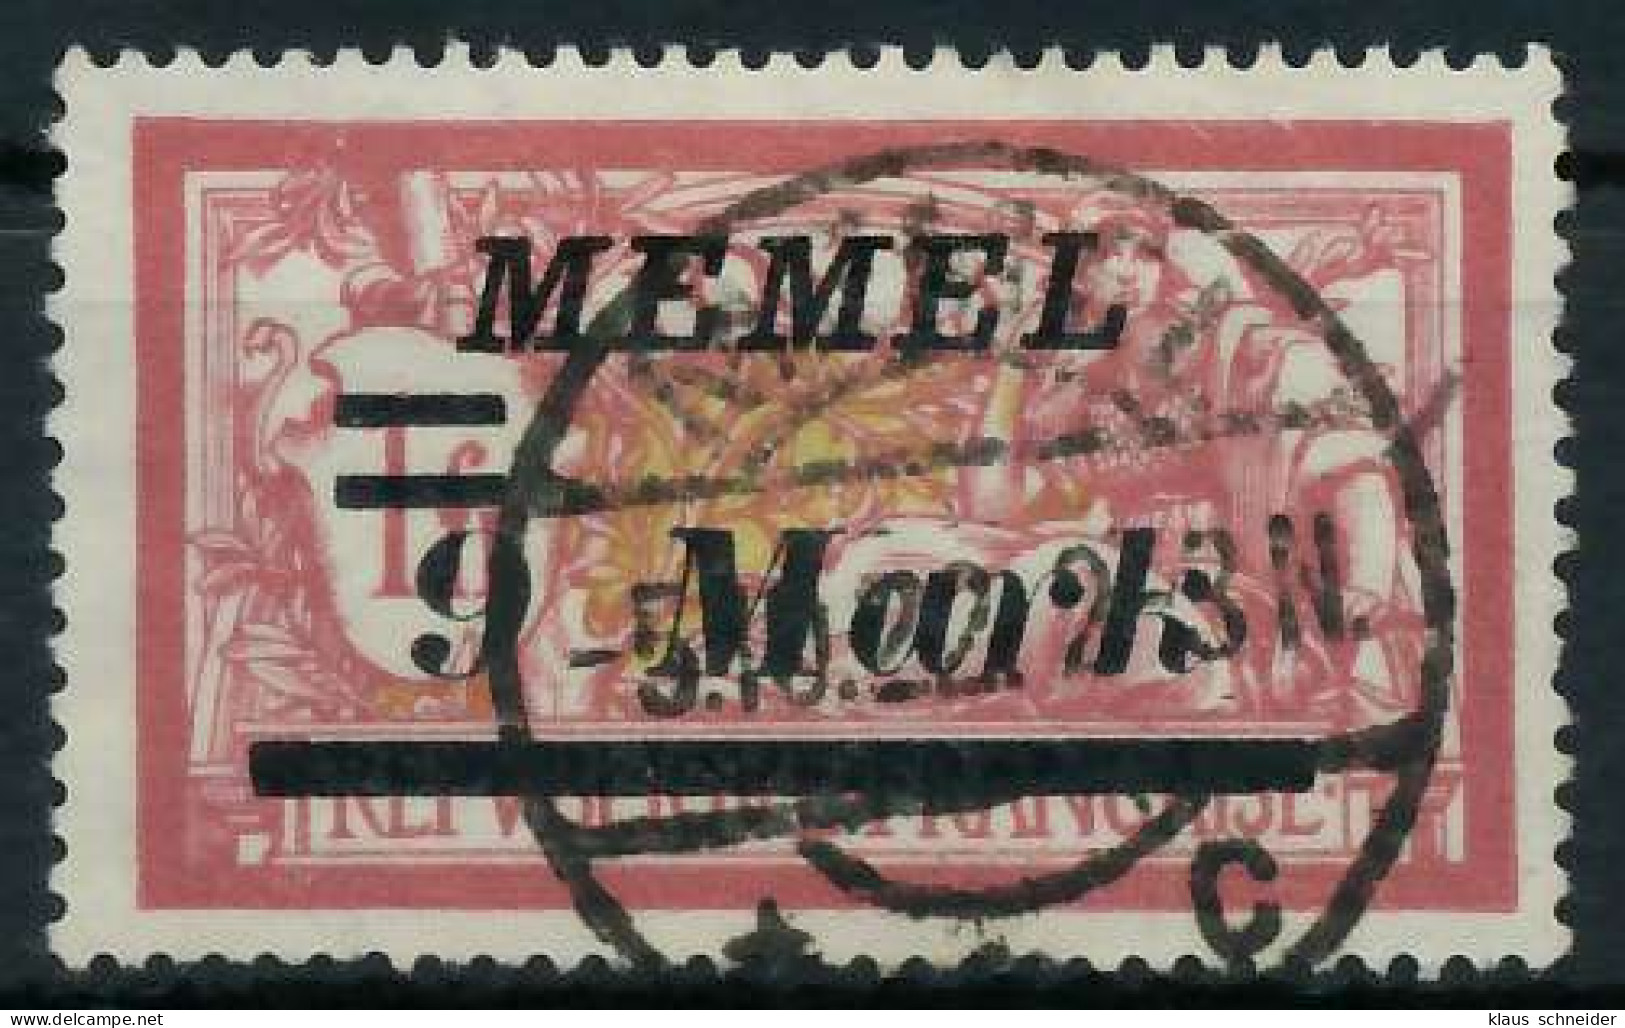 MEMEL 1922 Nr 93II Zentrisch Gestempelt X452E92 - Memel (Klaïpeda) 1923